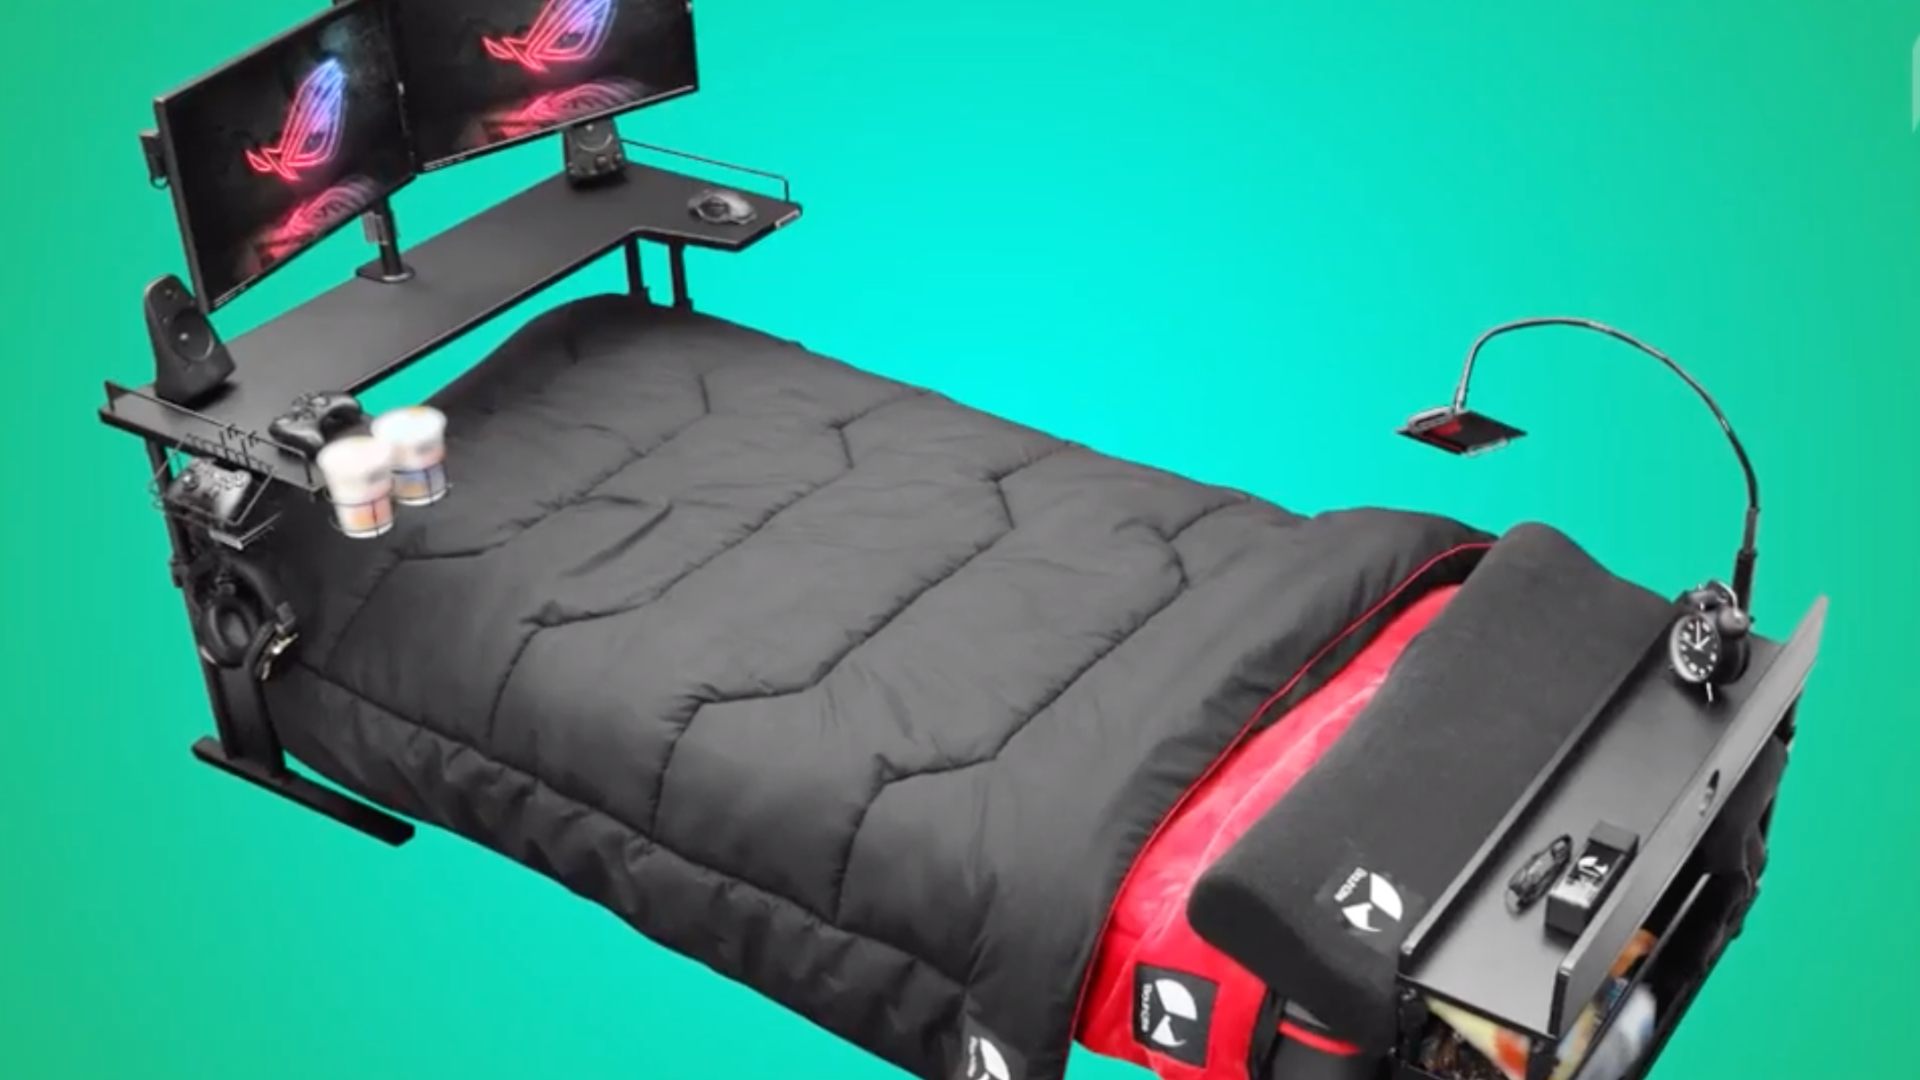 Jouez sans vous lever grâce à cet incroyable lit pour gamers